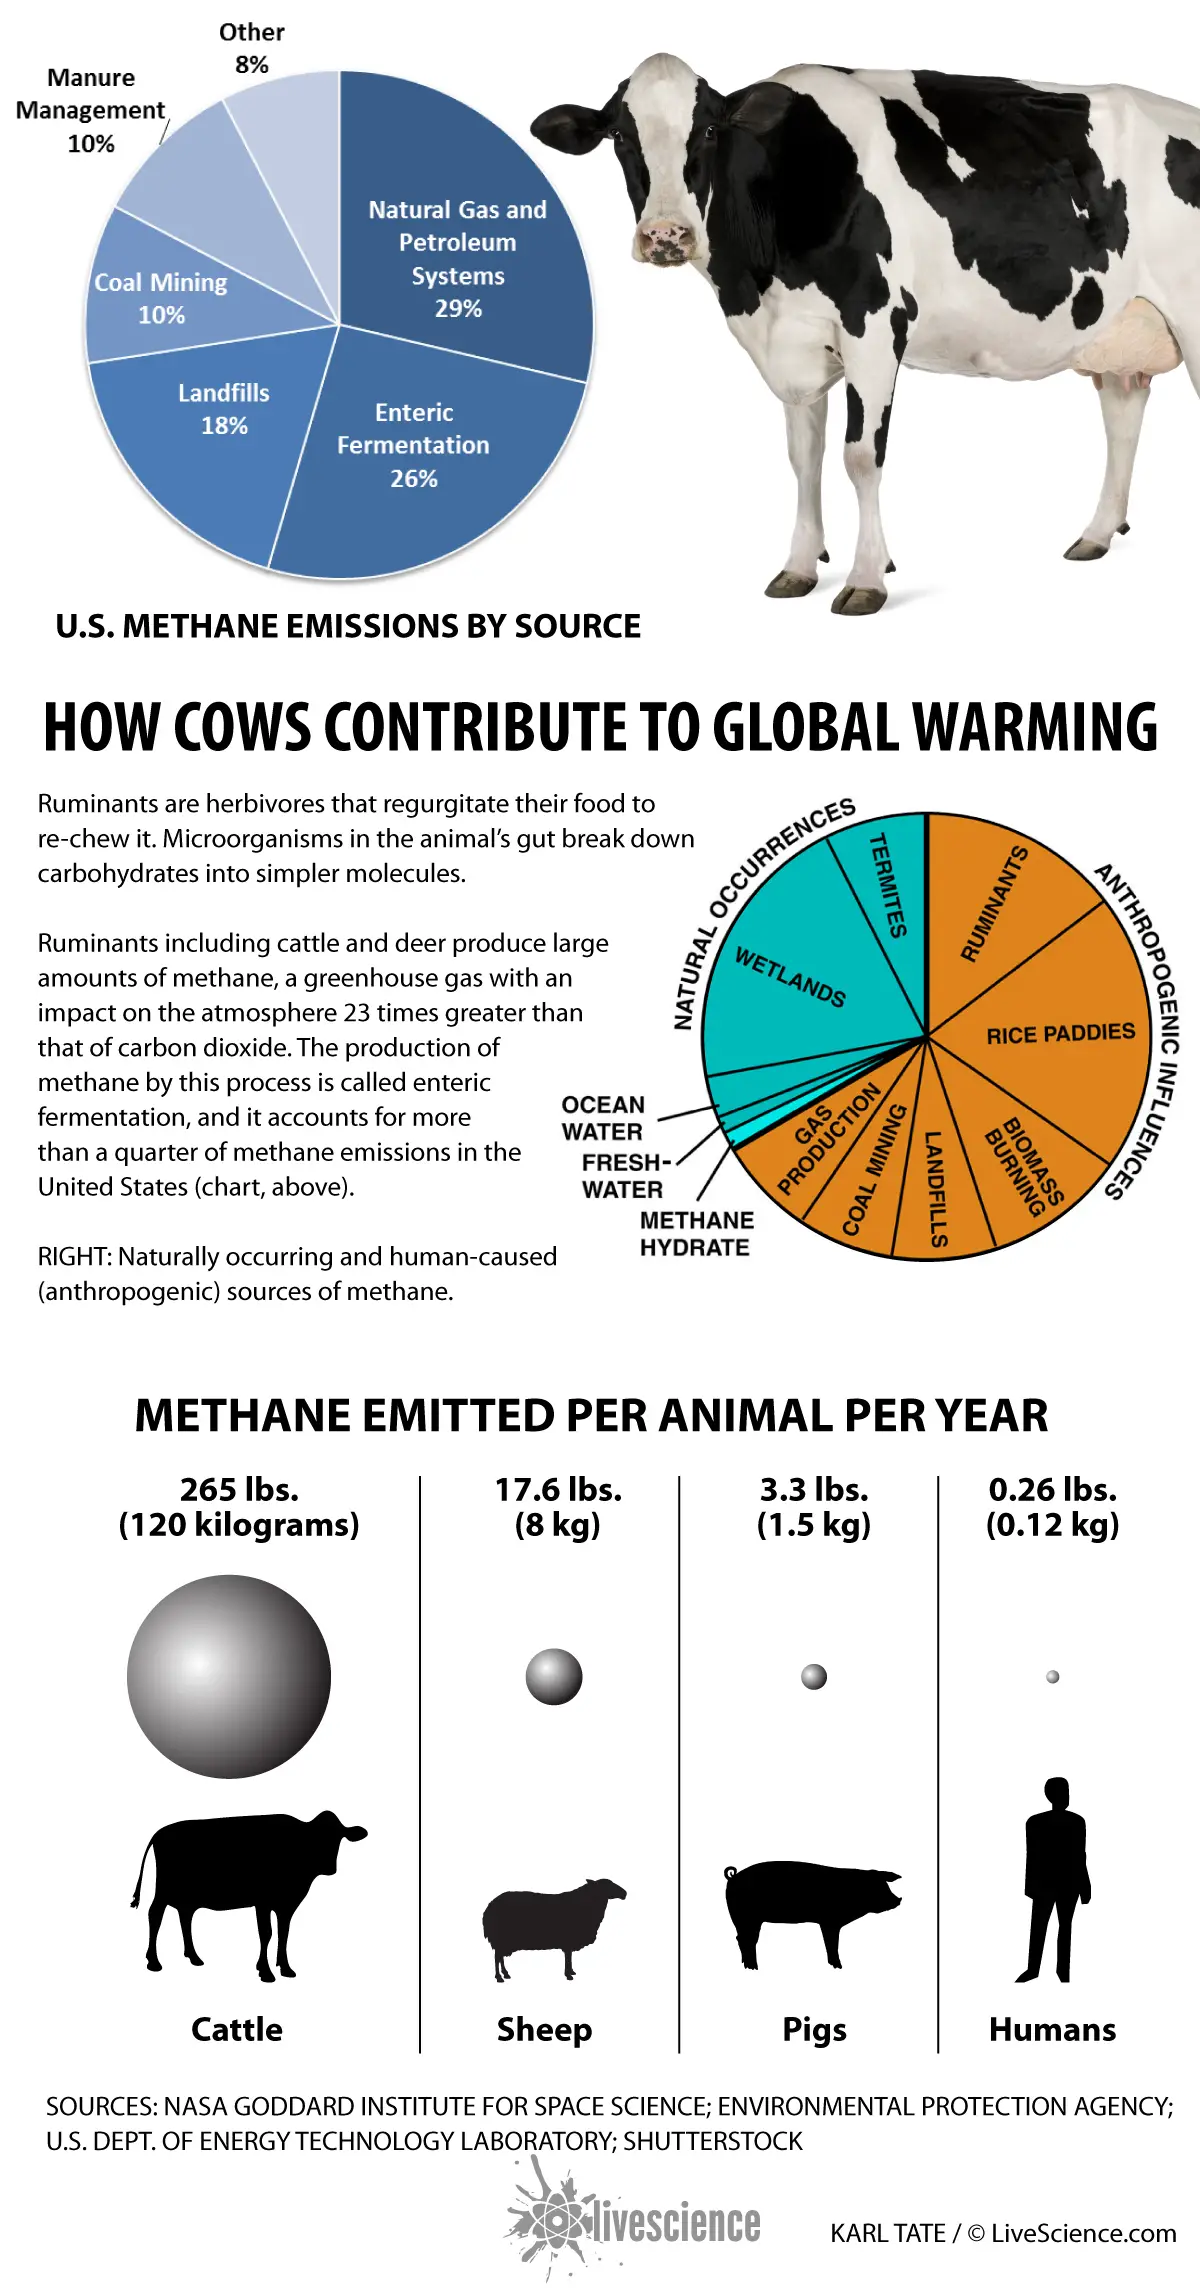 Le gaz méthane fermenté dans les entrailles des animaux de ferme contribue jusqu'à 26 % des émissions de méthane aux États-Unis. [See full infographic]